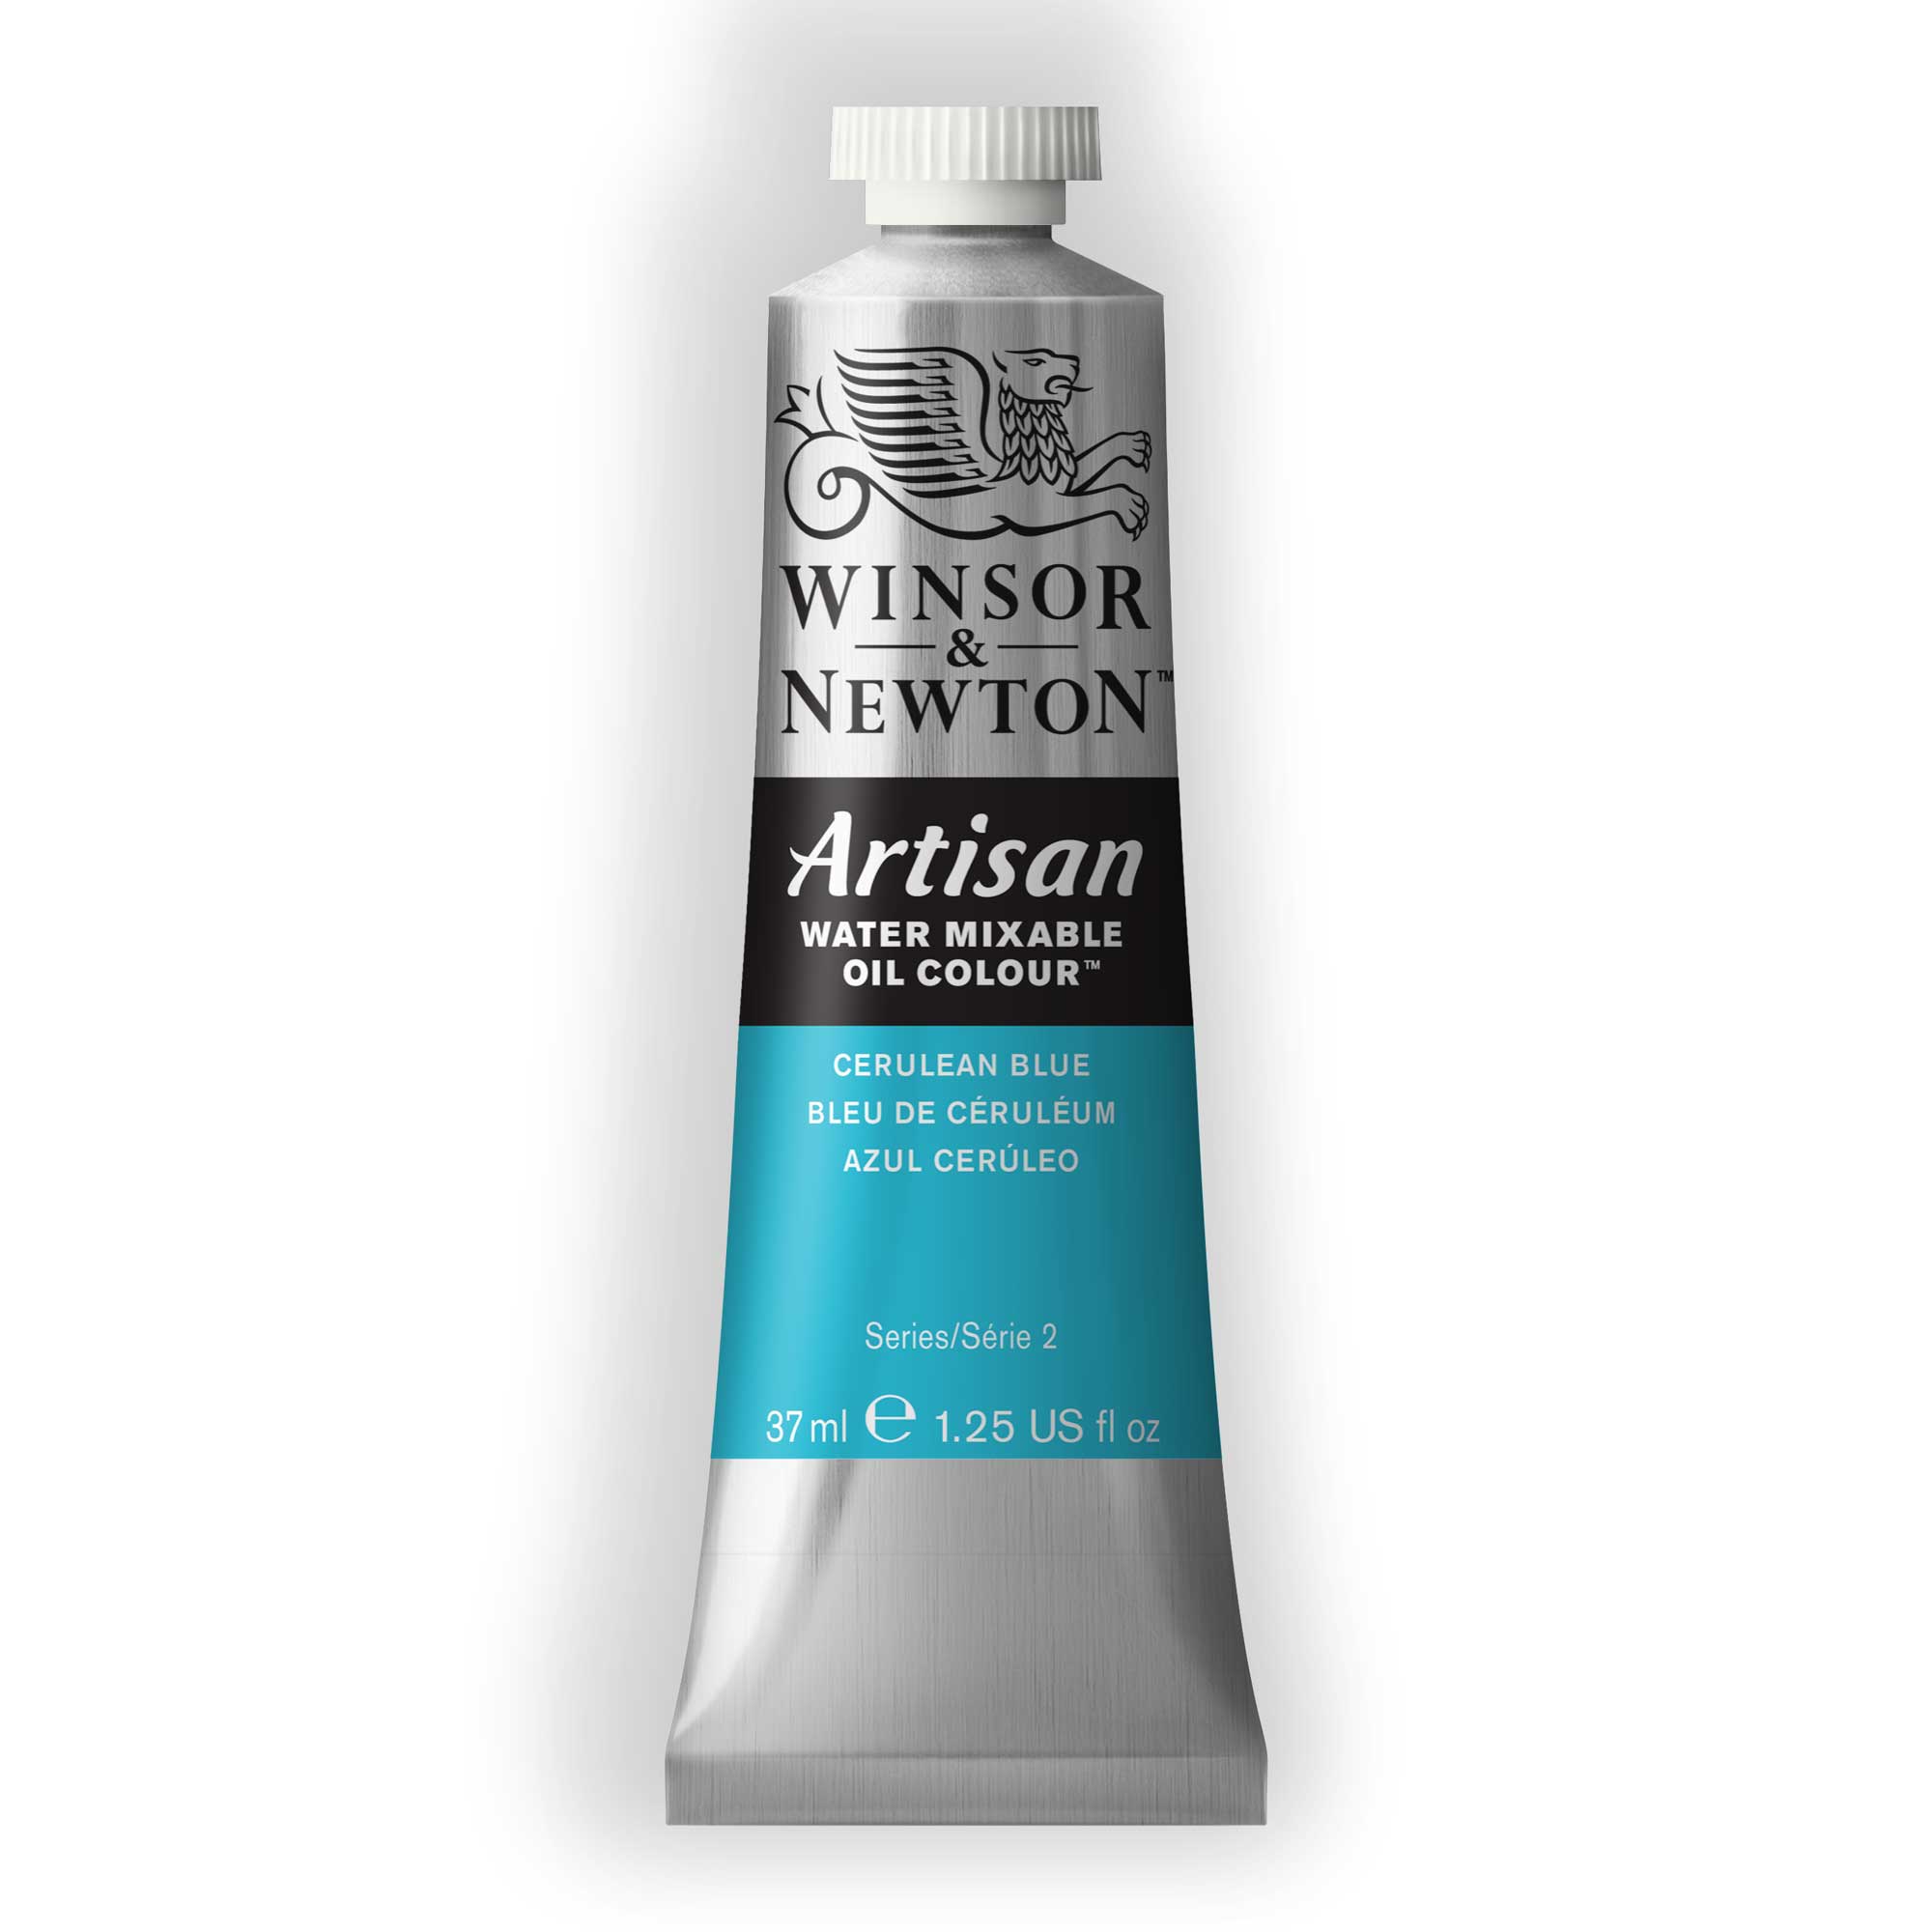 Winsor & Newton Artisan Water Mixable Oil Colour tubes 37ml Series 2